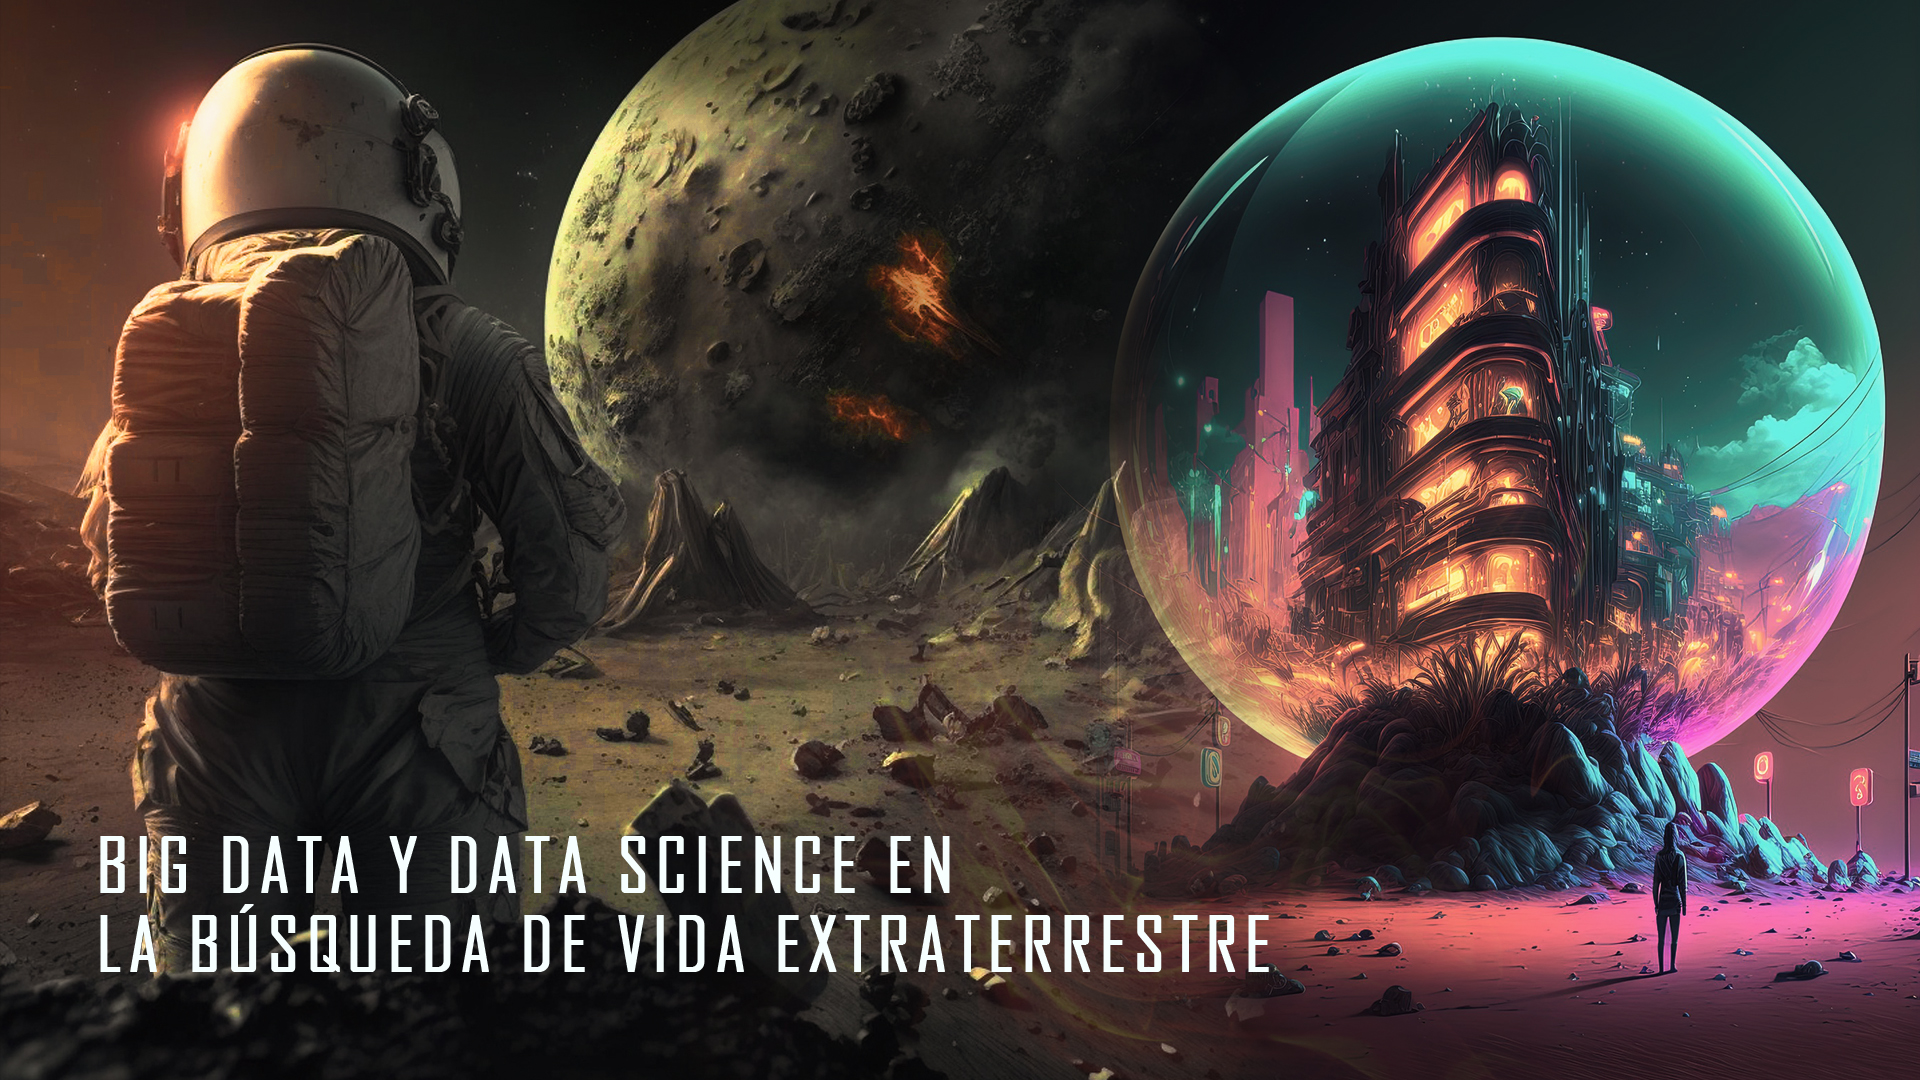 BIG DATA Y DATA SCIENCE EN LA BÚSQUEDA DE VIDA EXTRATERRESTRE